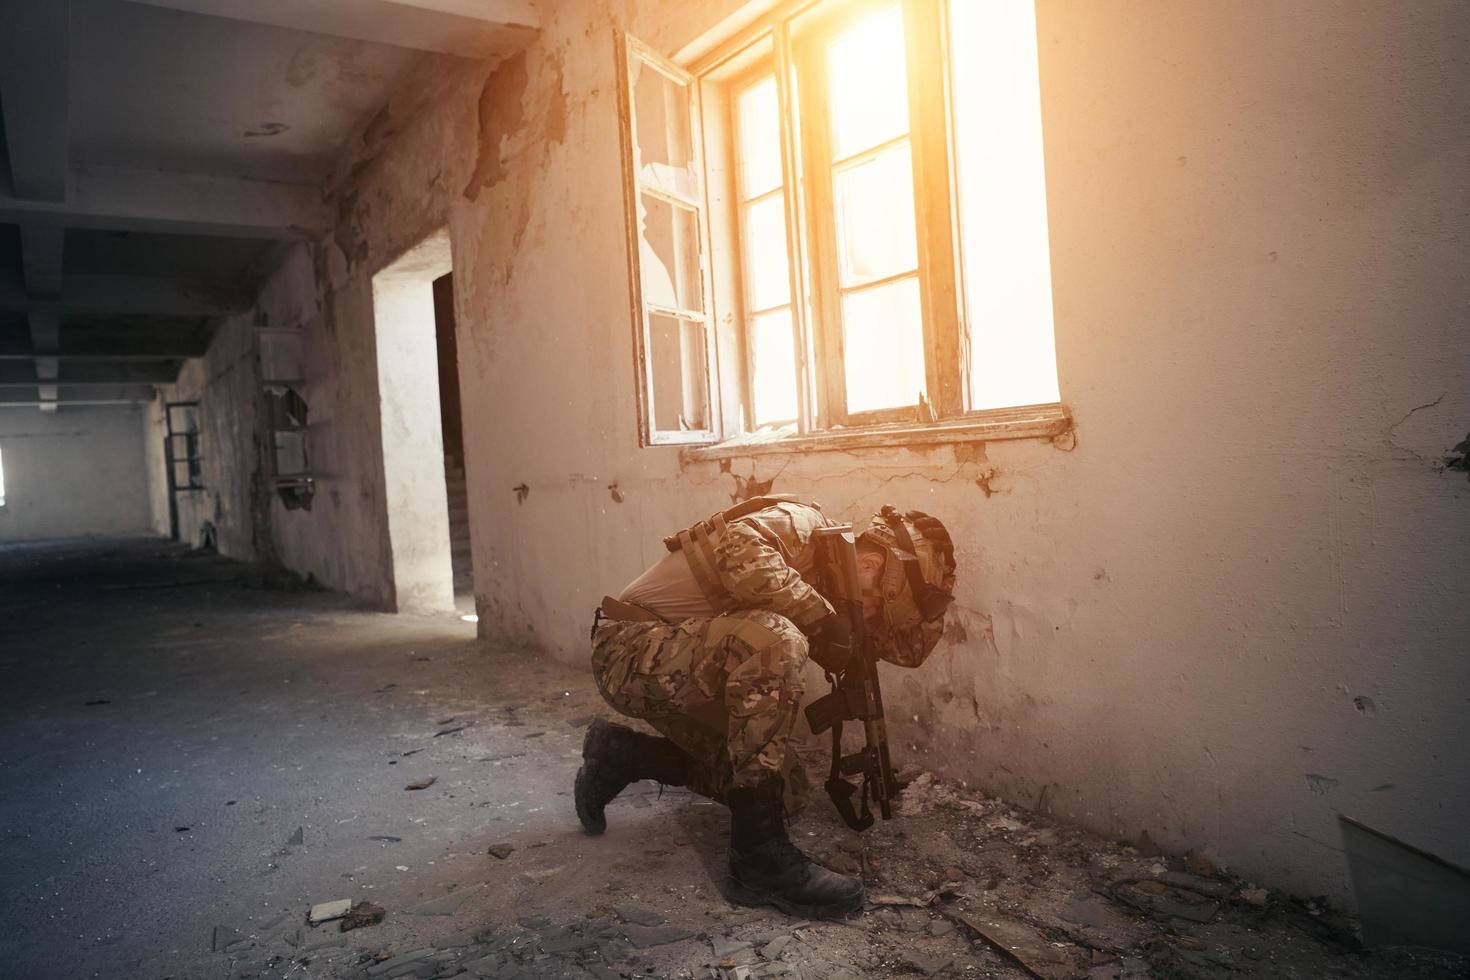 soldado en acción cerca de la revista de cambio de ventana y ponerse a cubierto foto